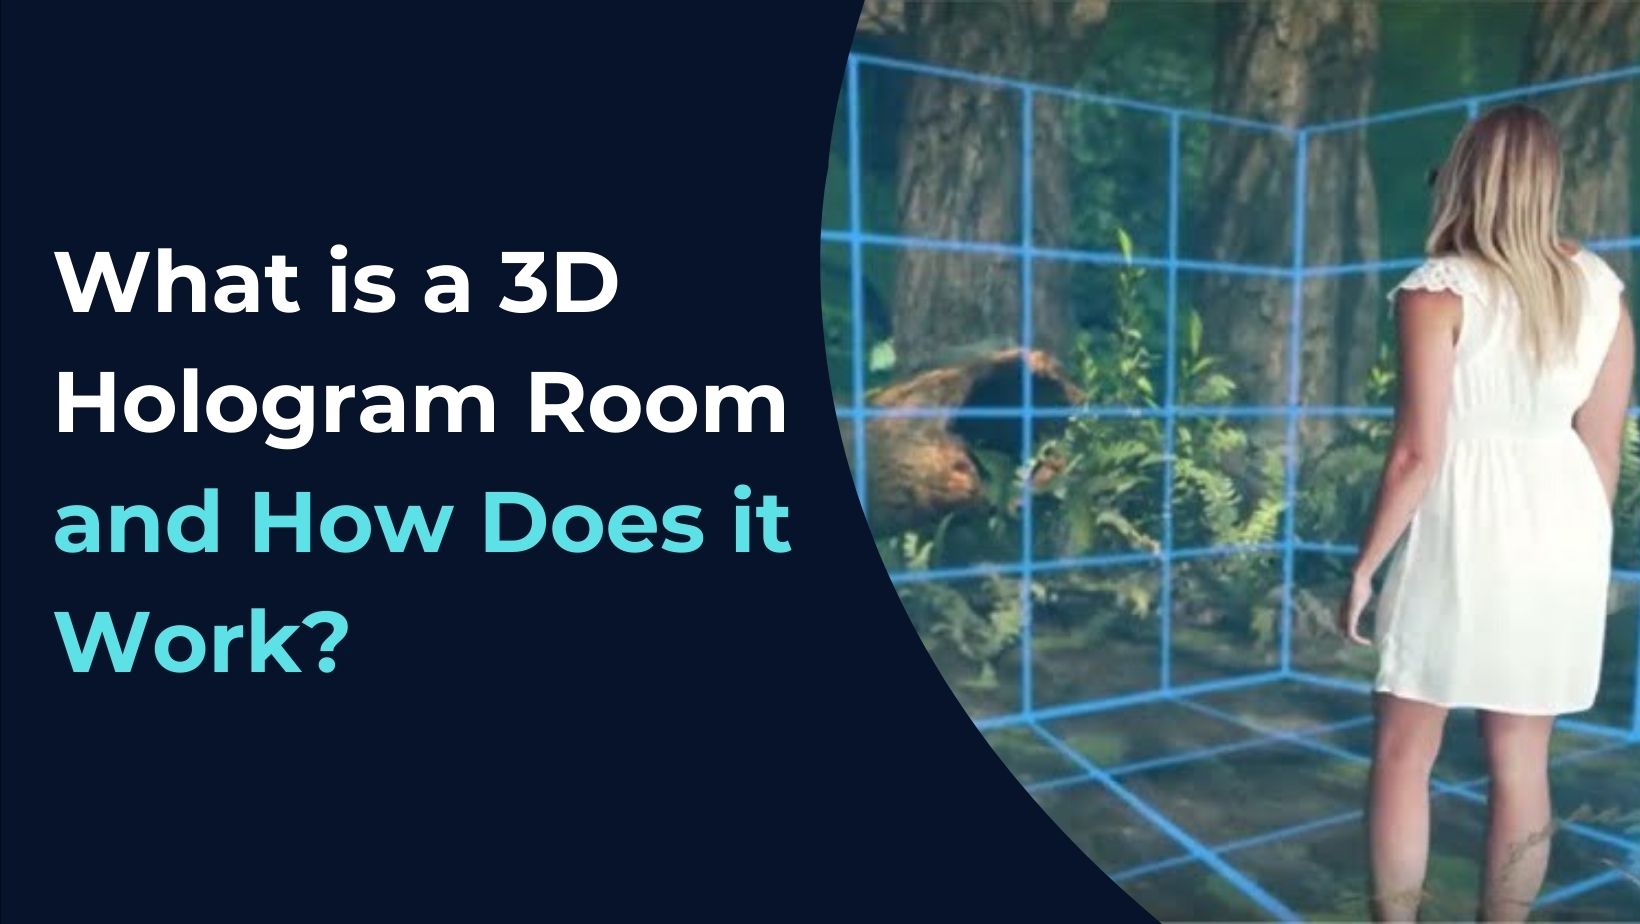 3D Hologram Room